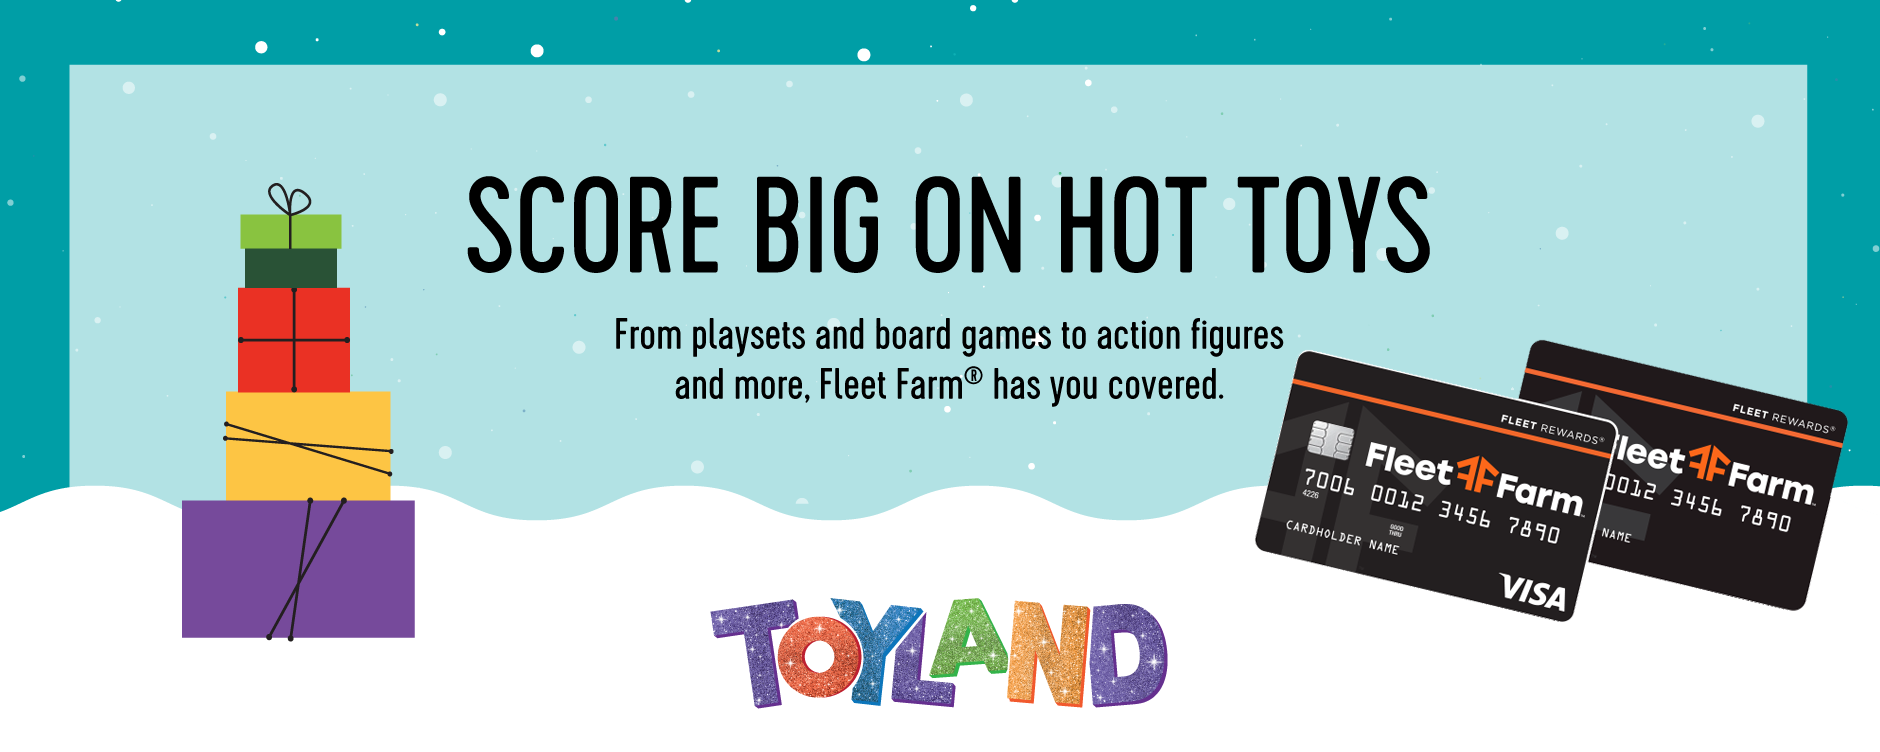 score-big-on-hot-toys-fleet-farm